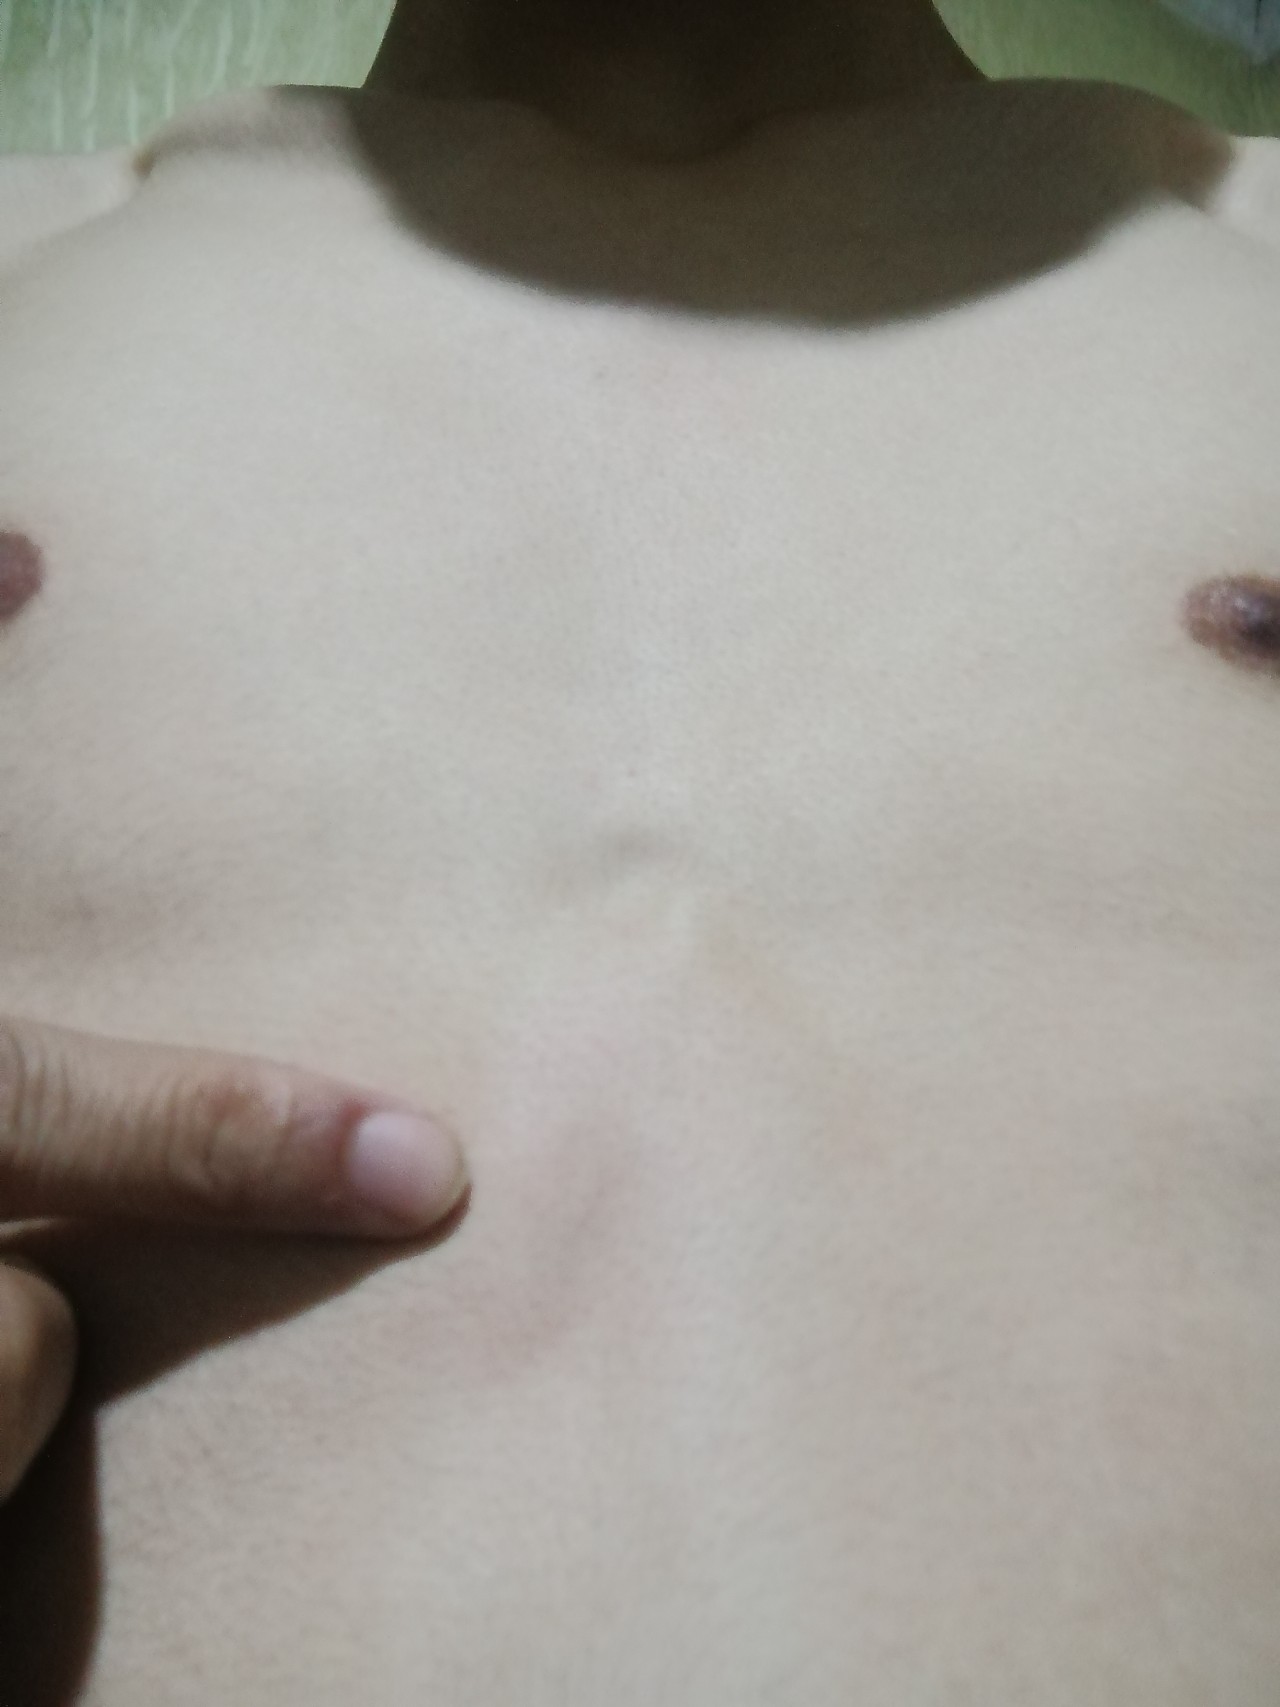 уплотнение в области груди у женщин фото 73